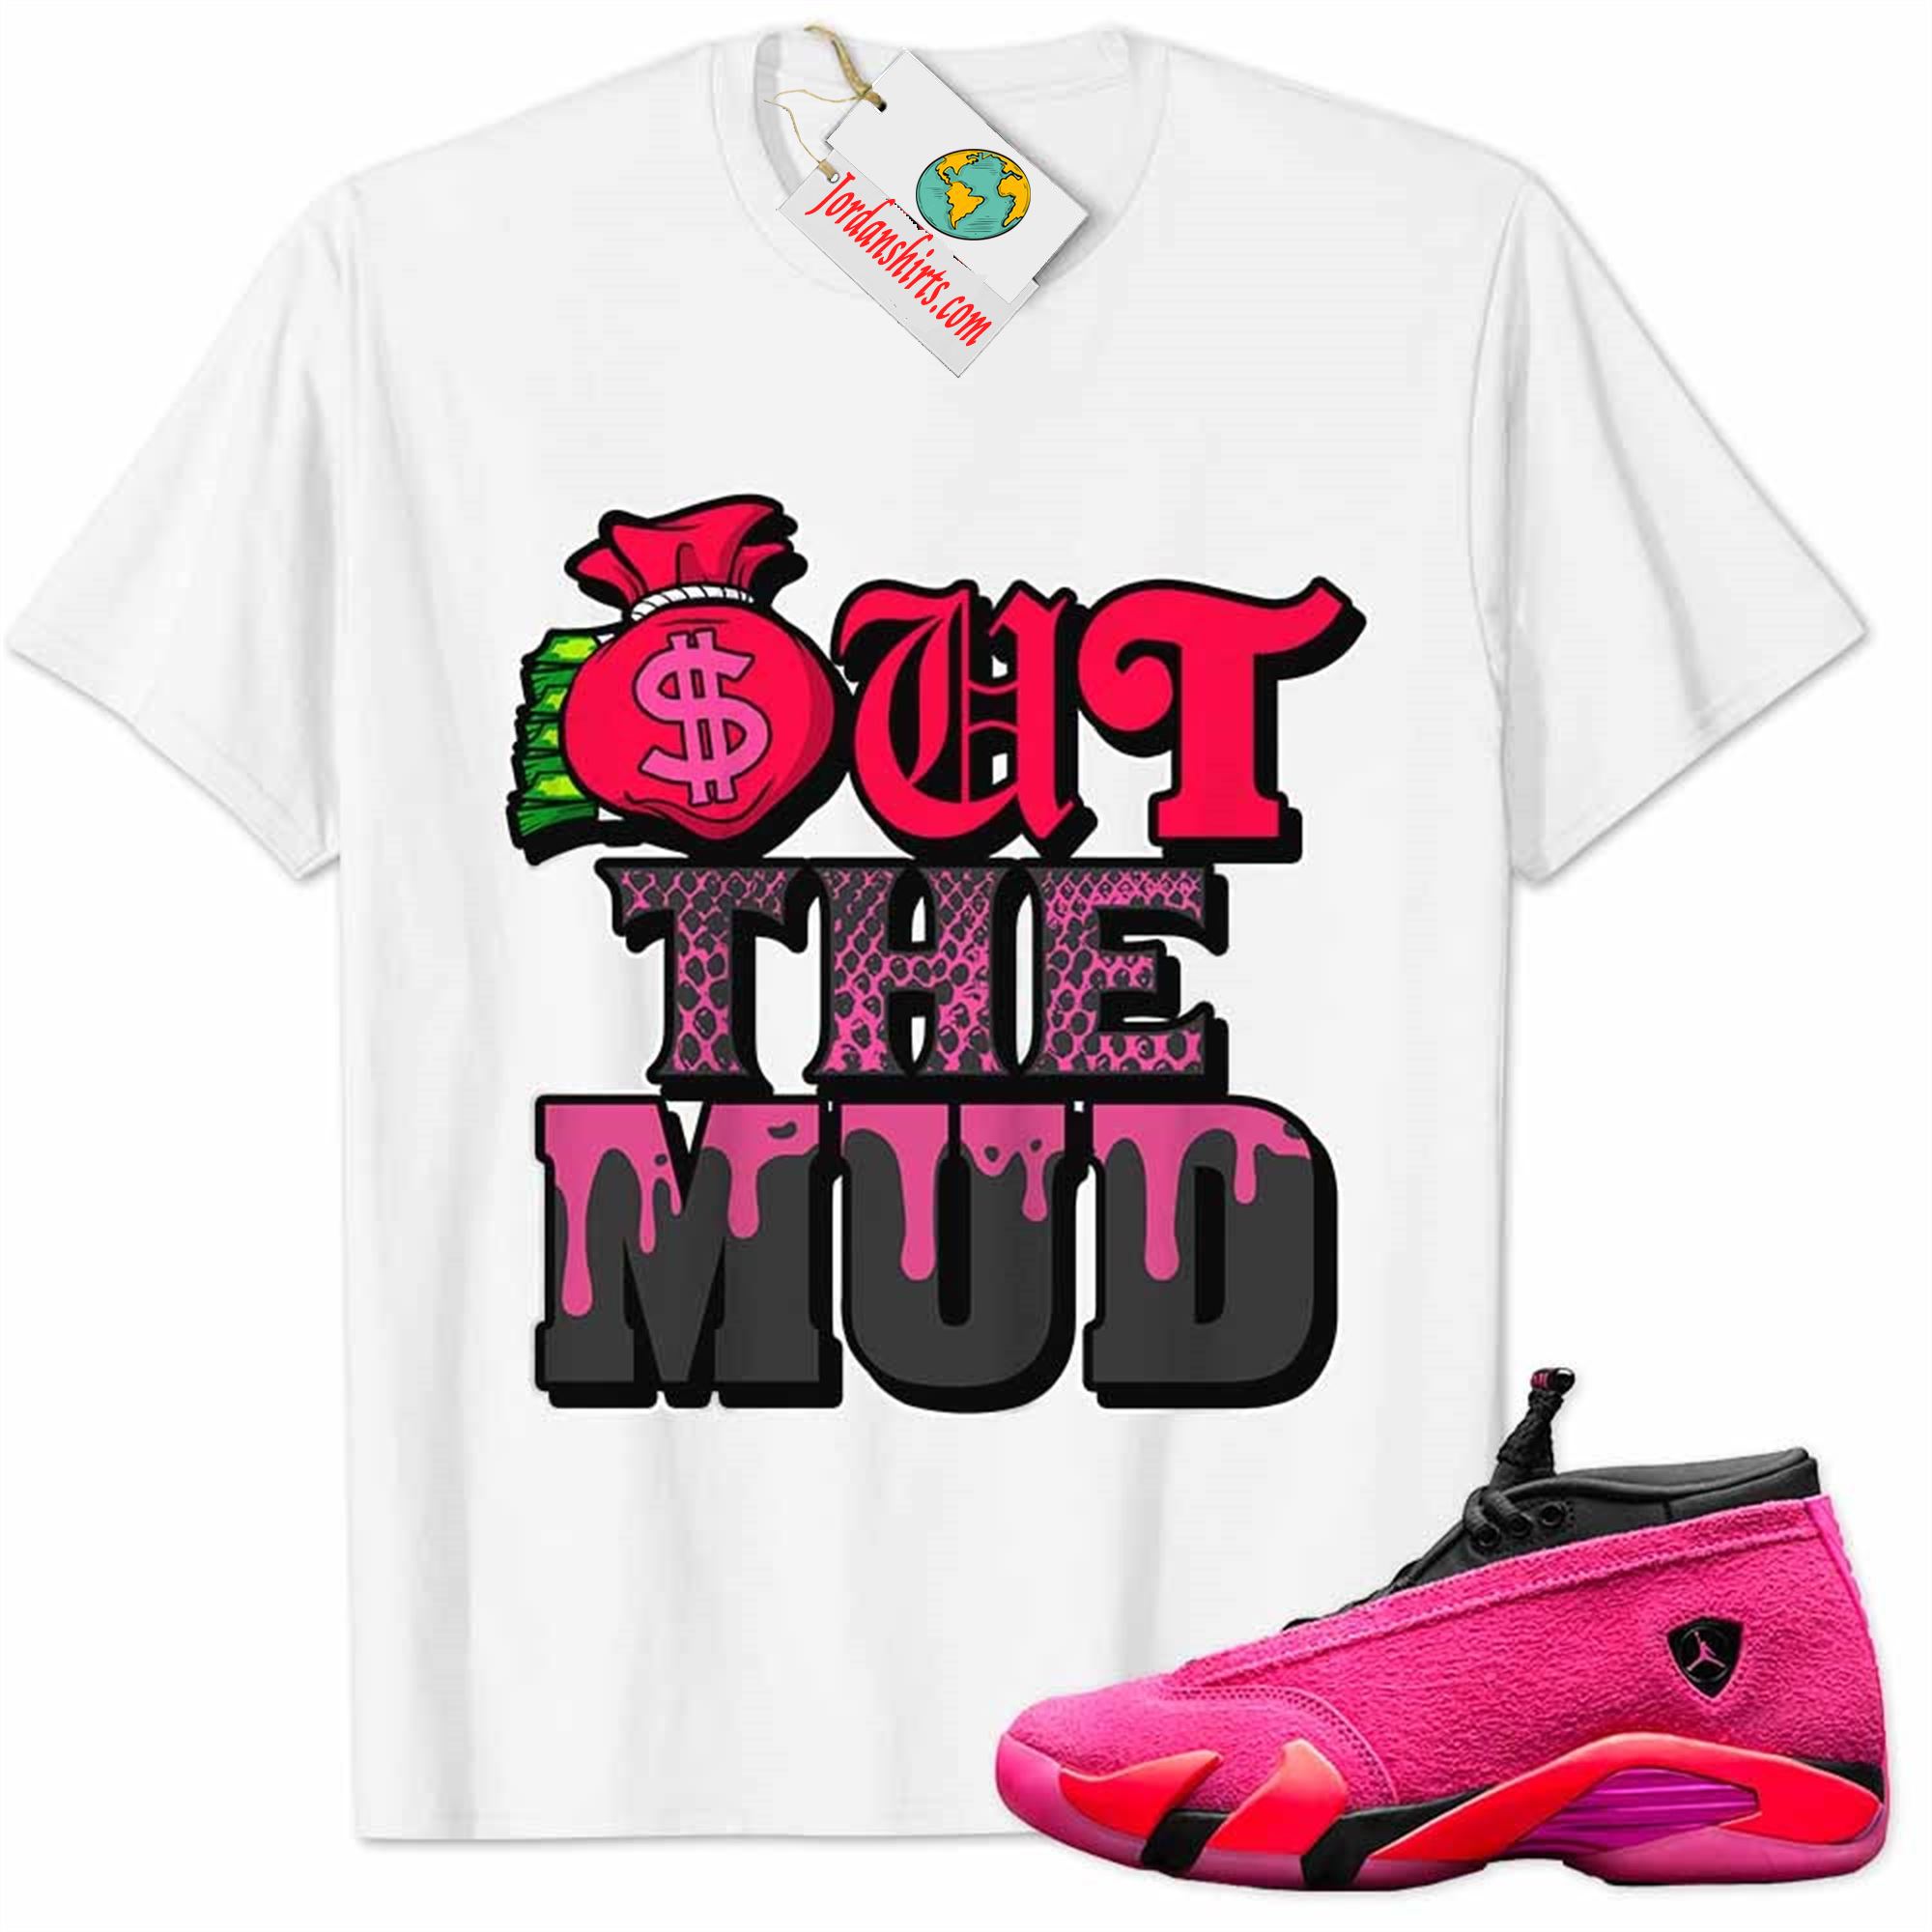 Jordan 14 Shirt, Jordan 14 Wmns Shocking Pink Shirt Out The Mud Money Bag White Full Size Up To 5xl